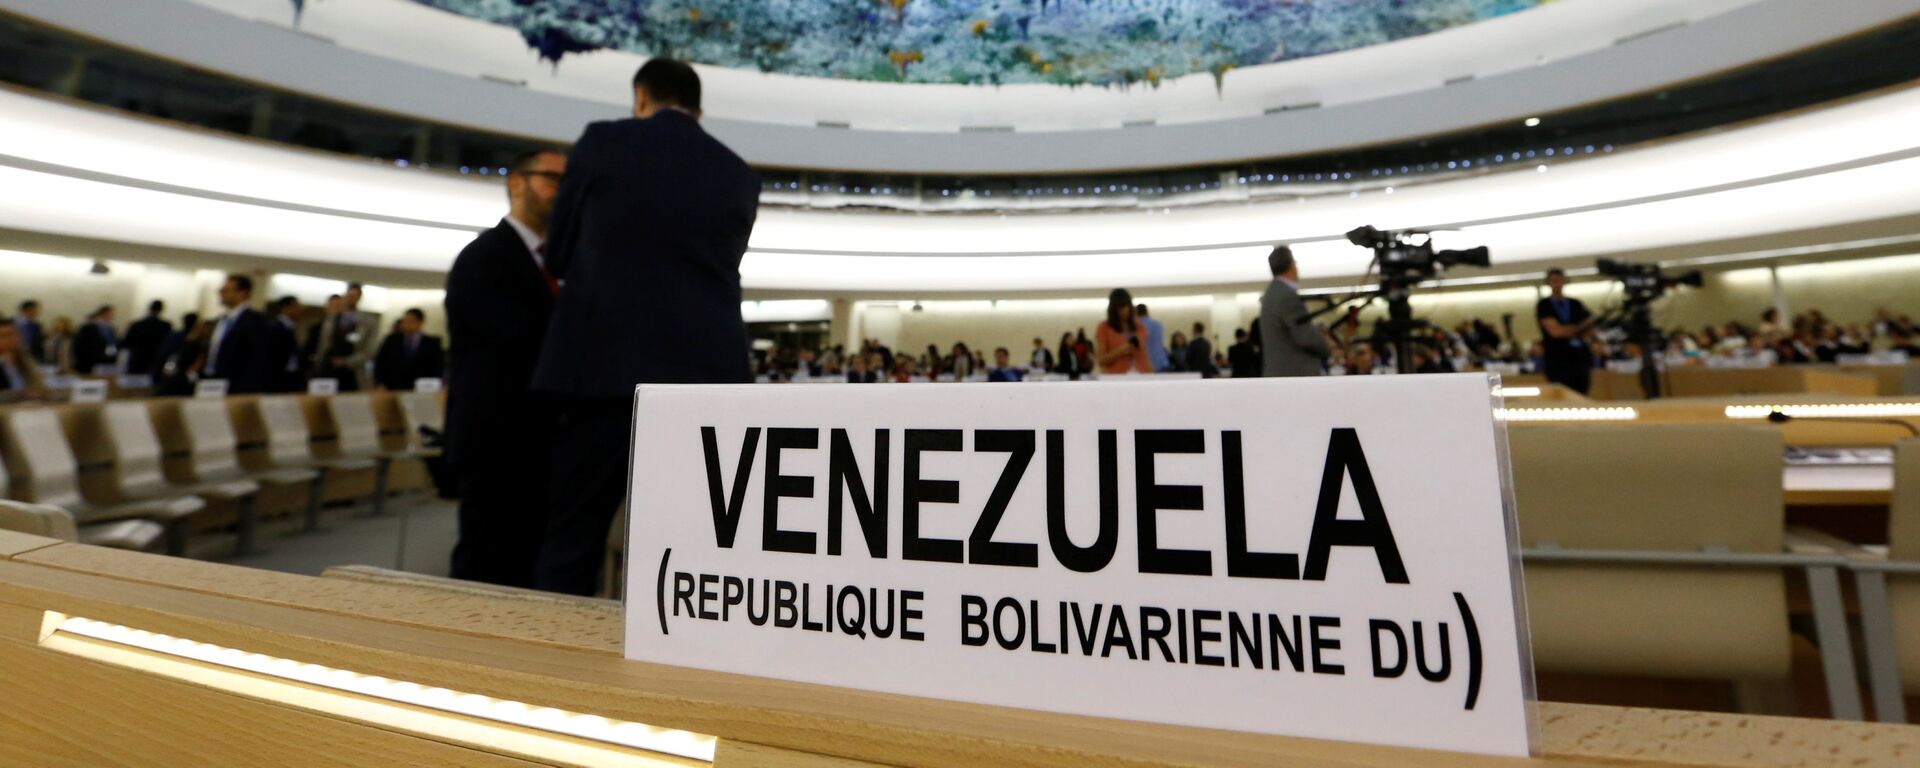 Venezuela presente en la apertura de la 36ª sesión del Consejo de Derechos Humanos de la ONU. - Sputnik Mundo, 1920, 11.04.2022